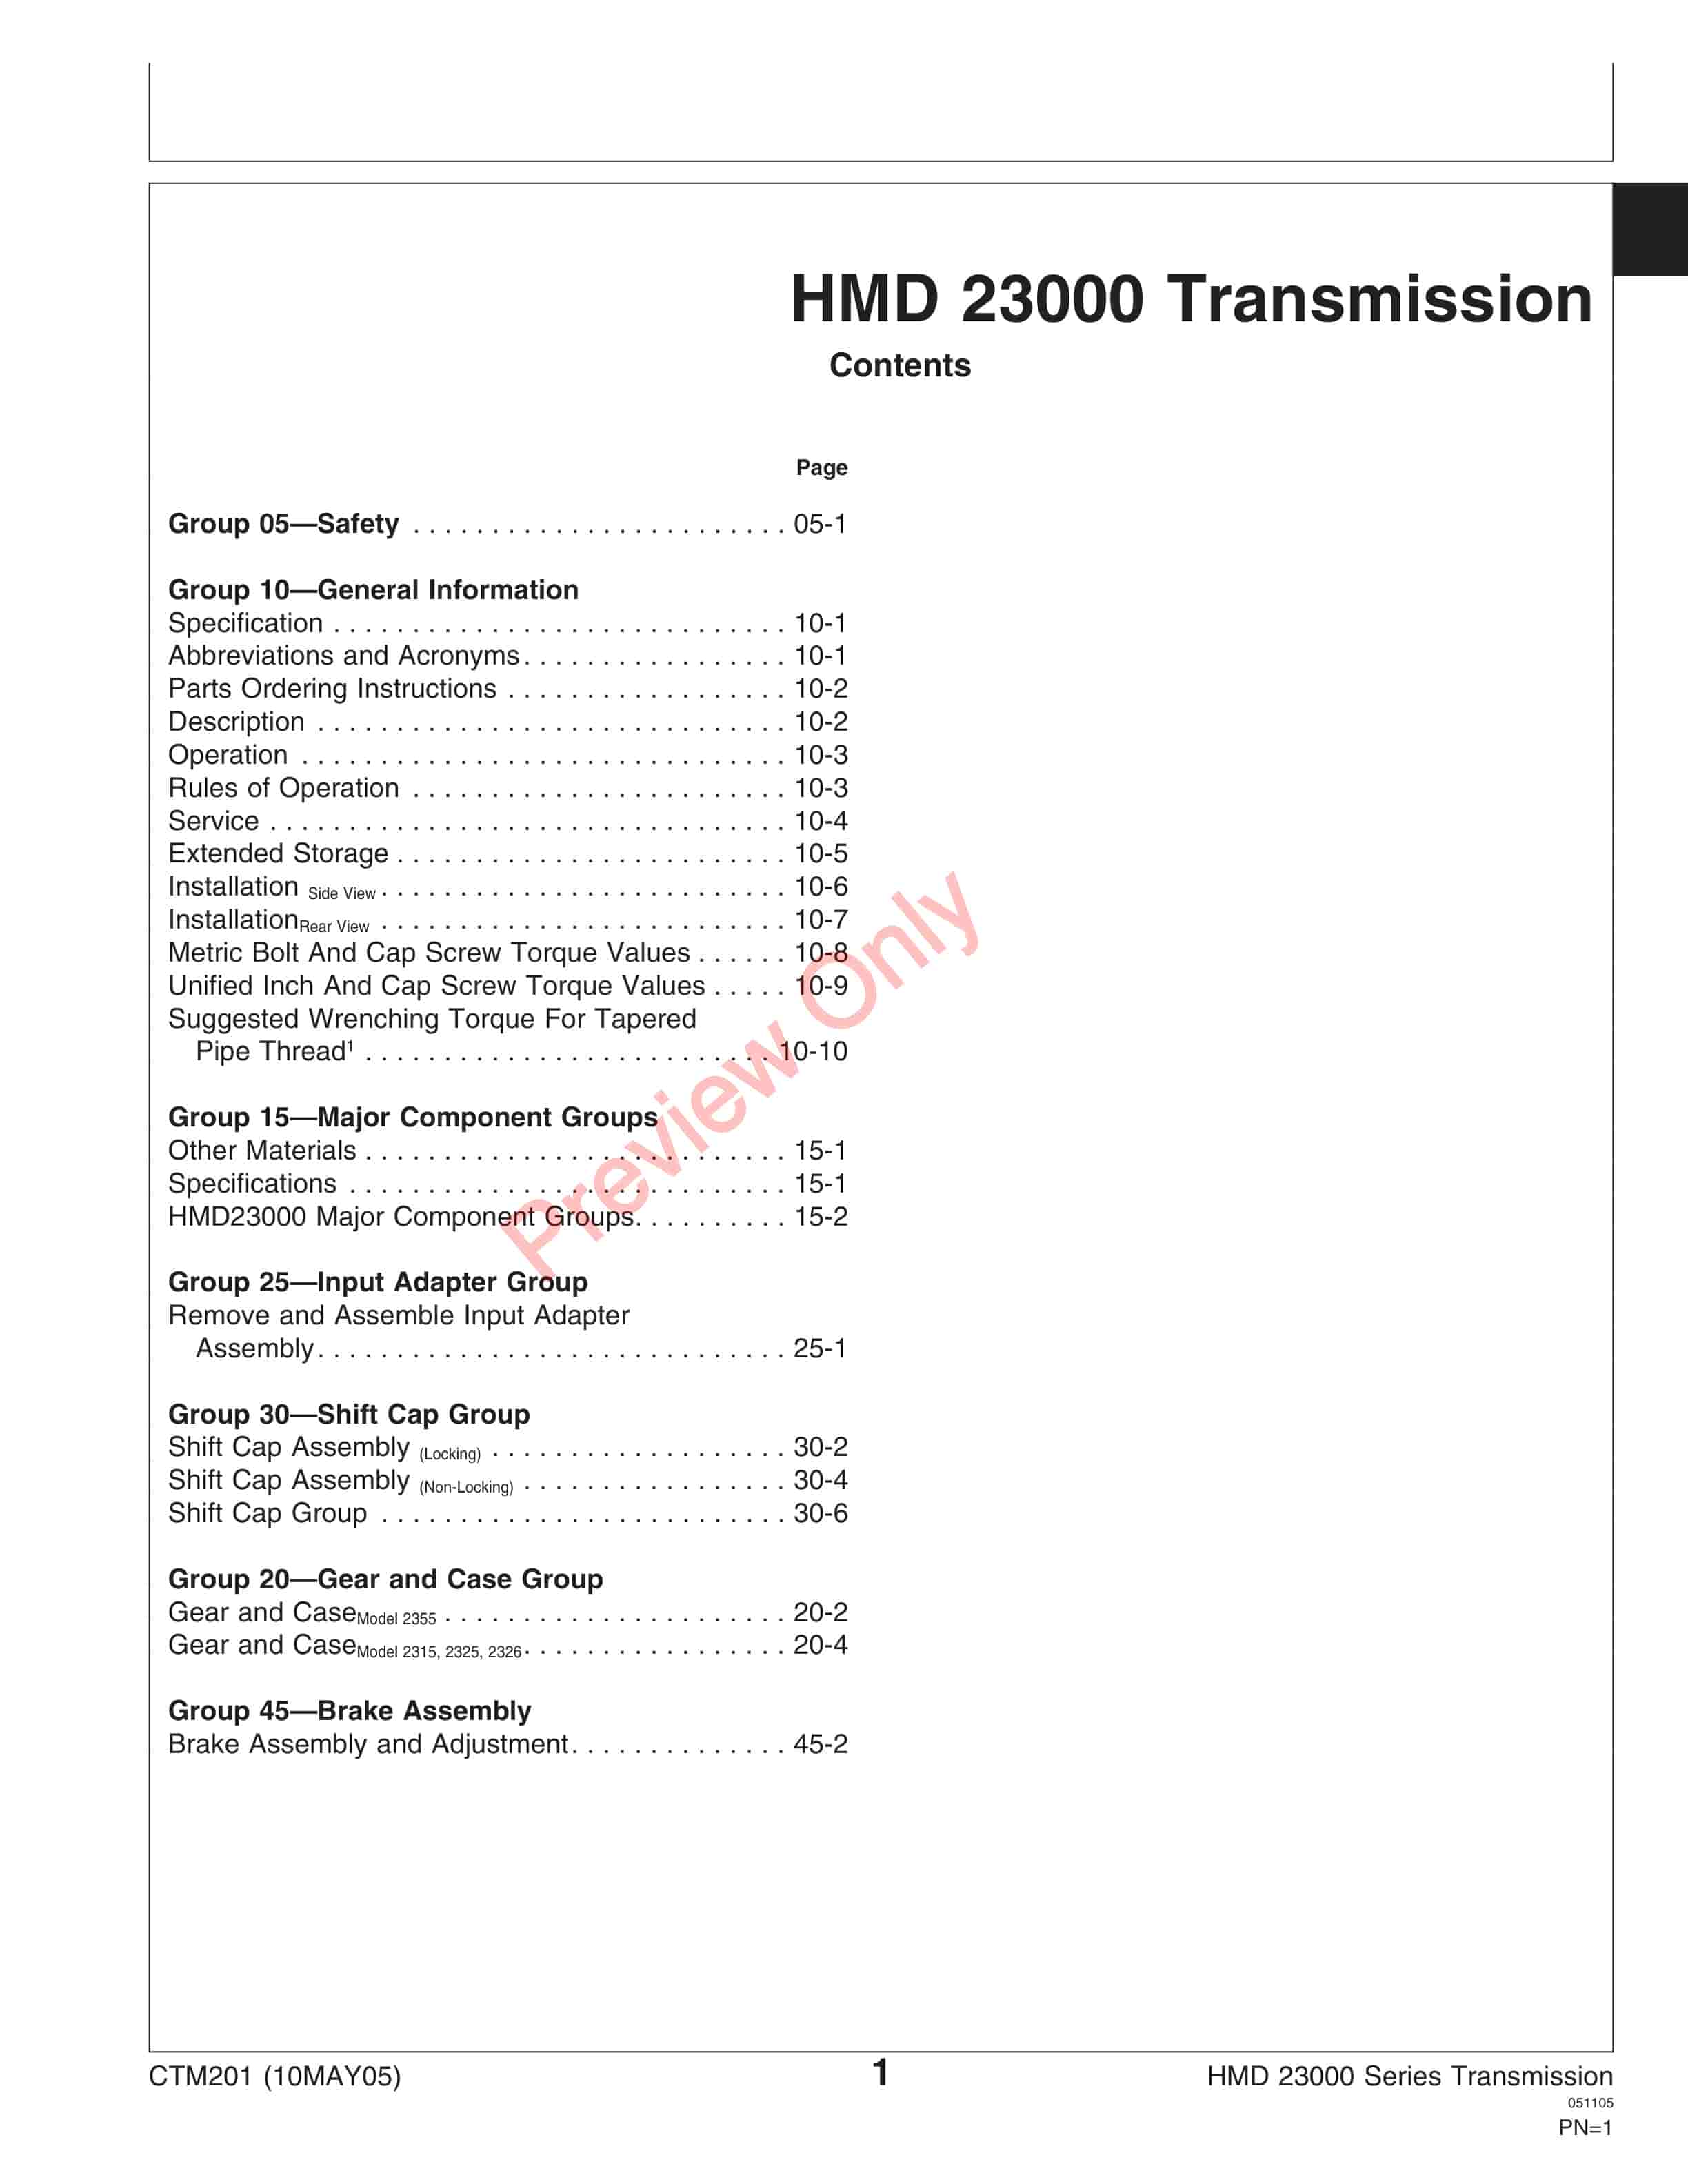 John Deere HMD 23000 Series Service Manual CTM201 10MAY05 5